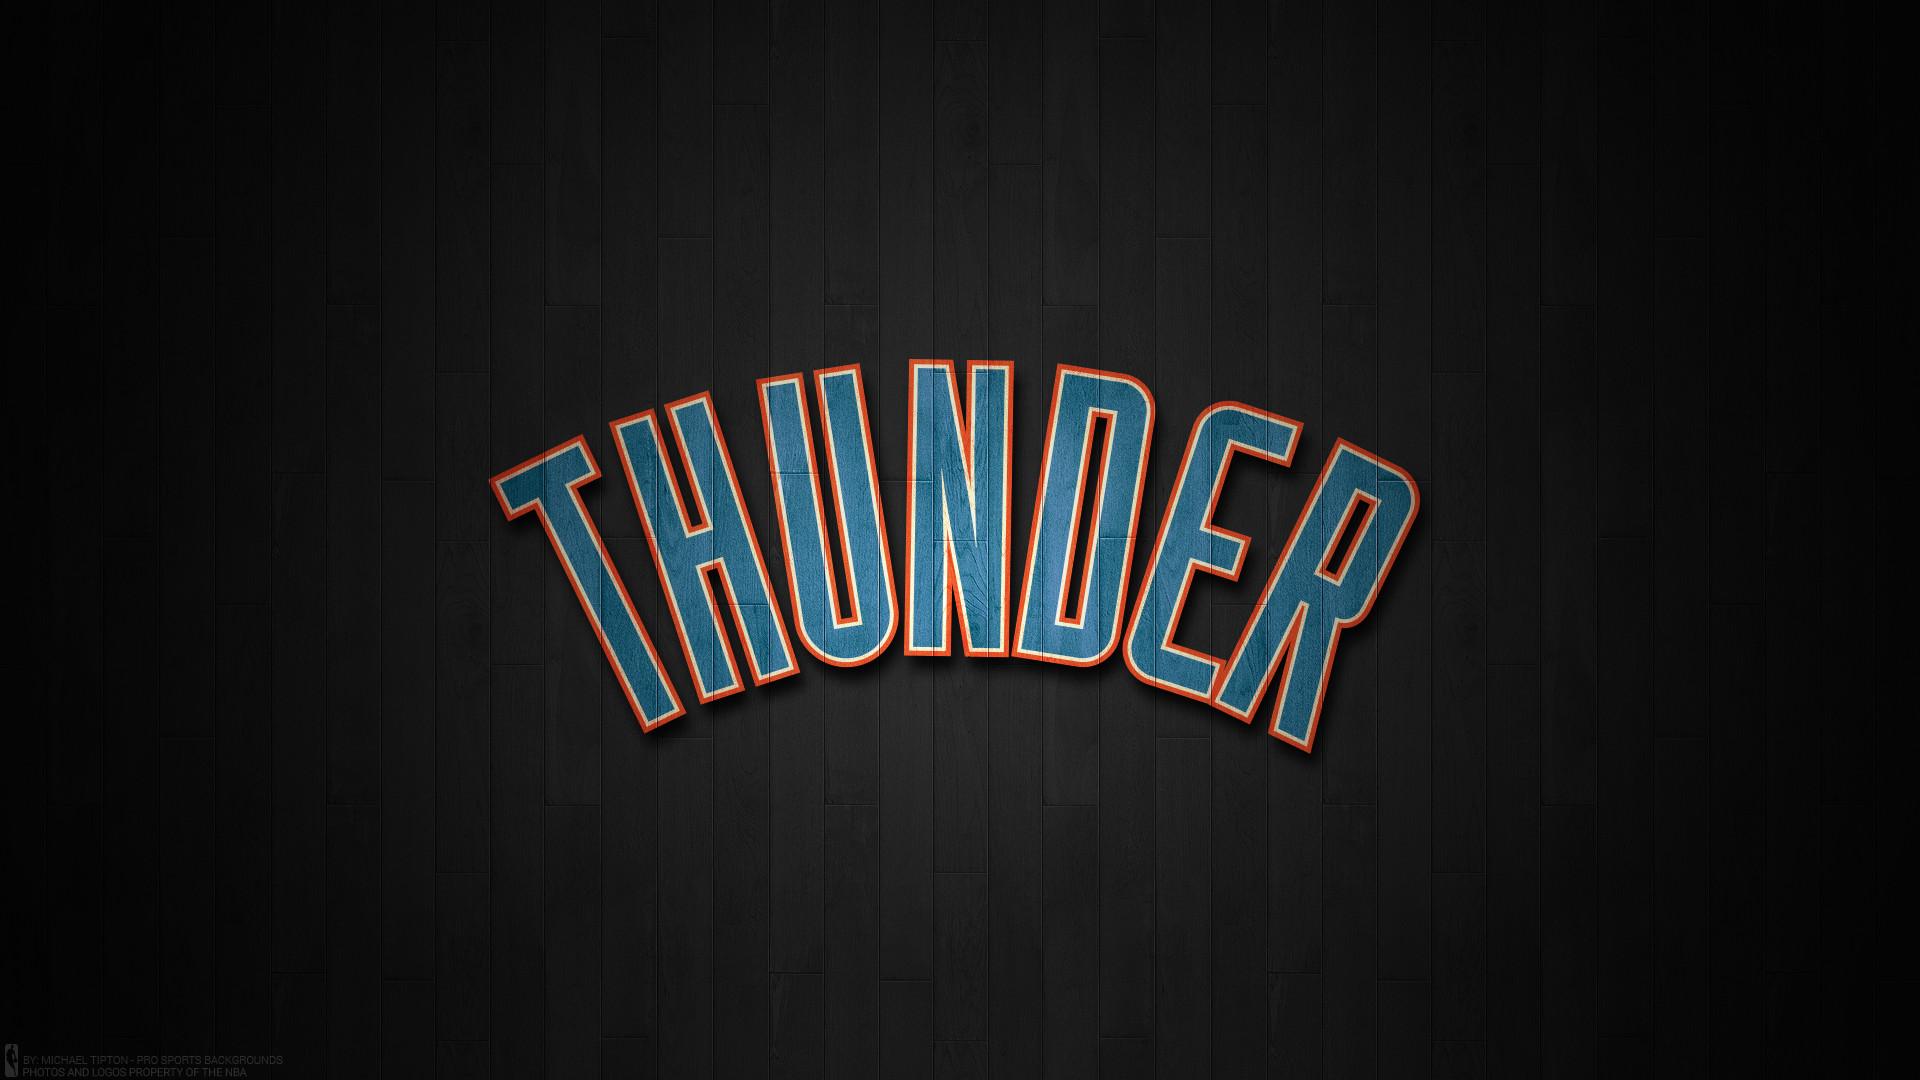 Oklahoma City Thunder HD Wallpaper